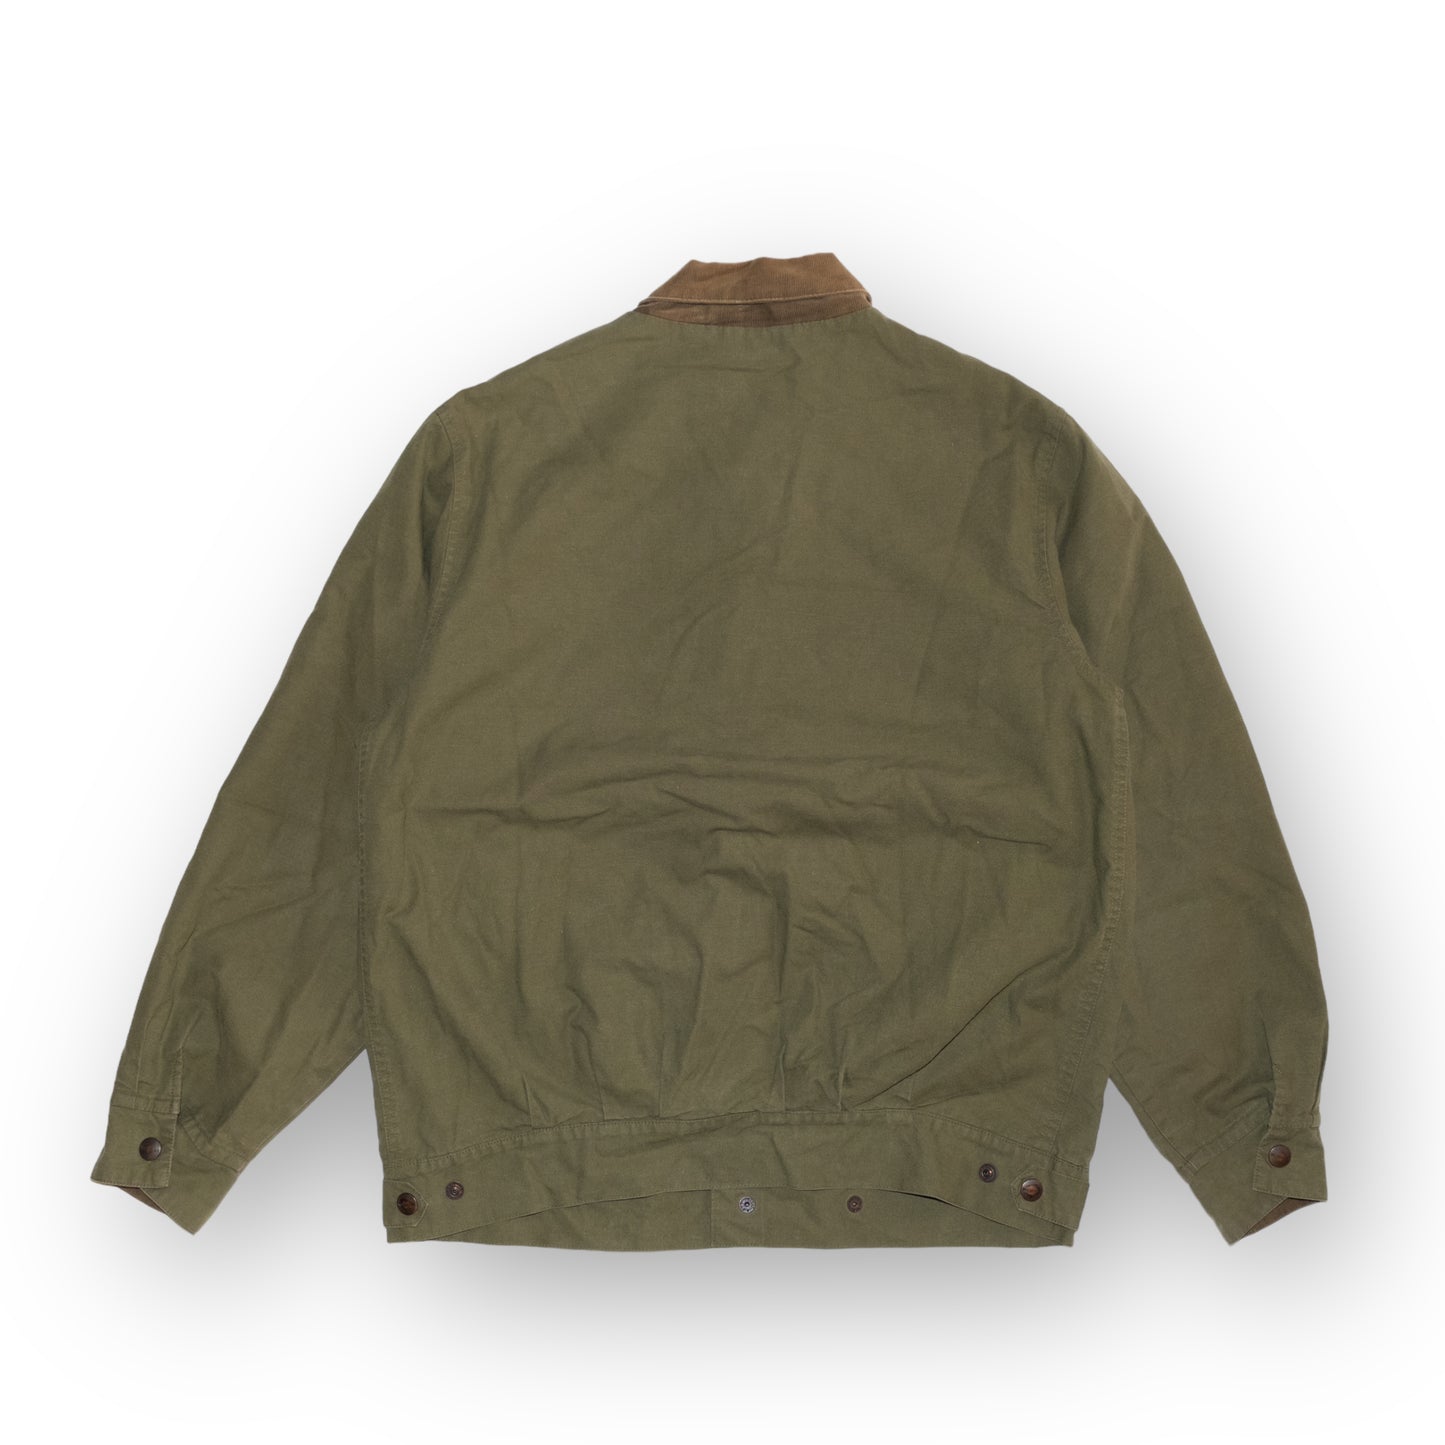 Wrangler Military short jacket